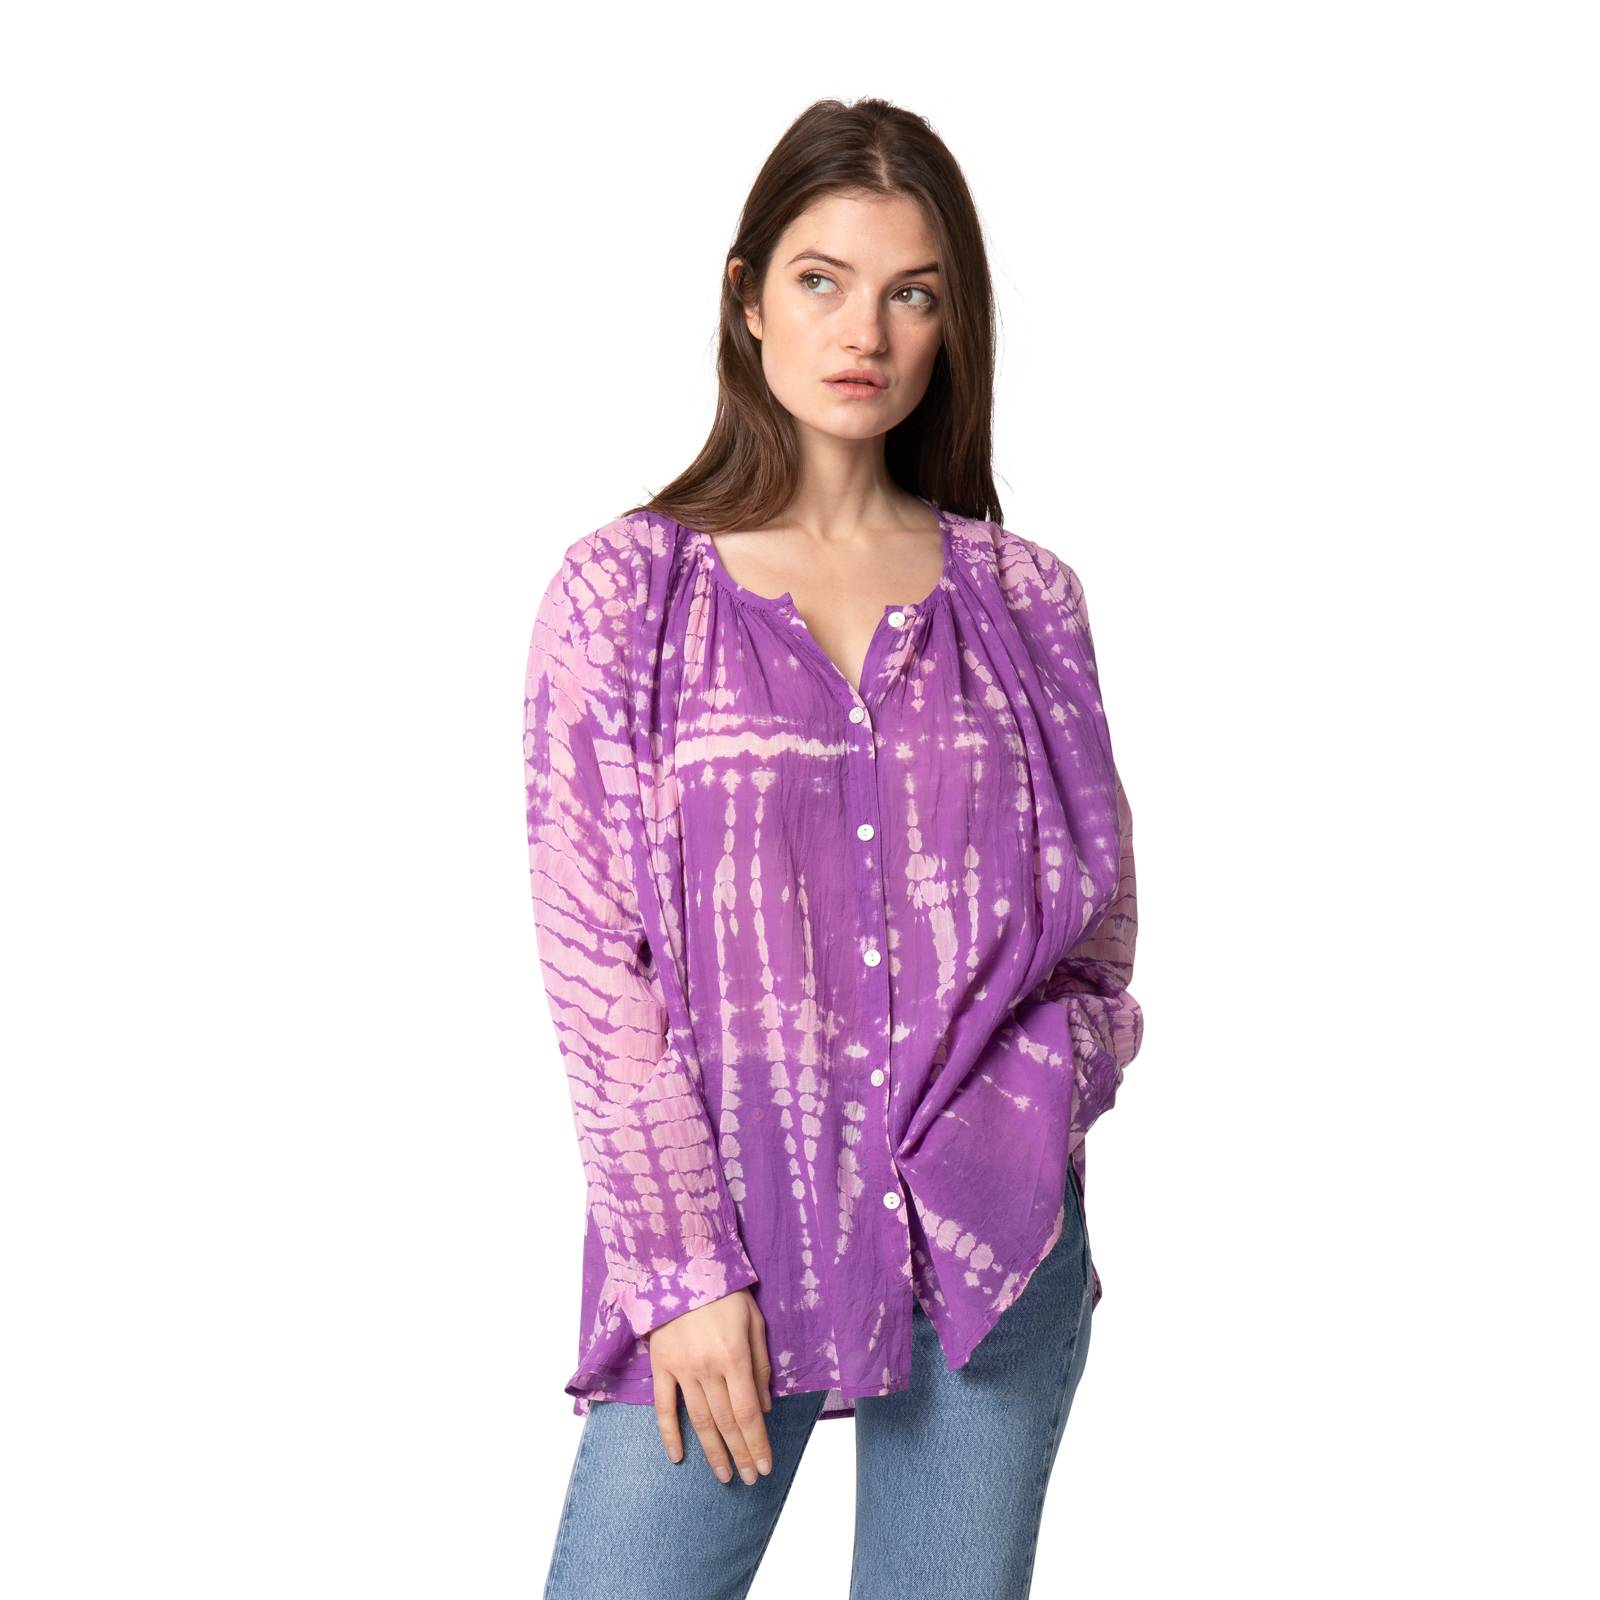 Chemises et blouses Blouse Tie and Dye Chloe - 100% Coton Ethnique VT2214 PURPLE HIPPY